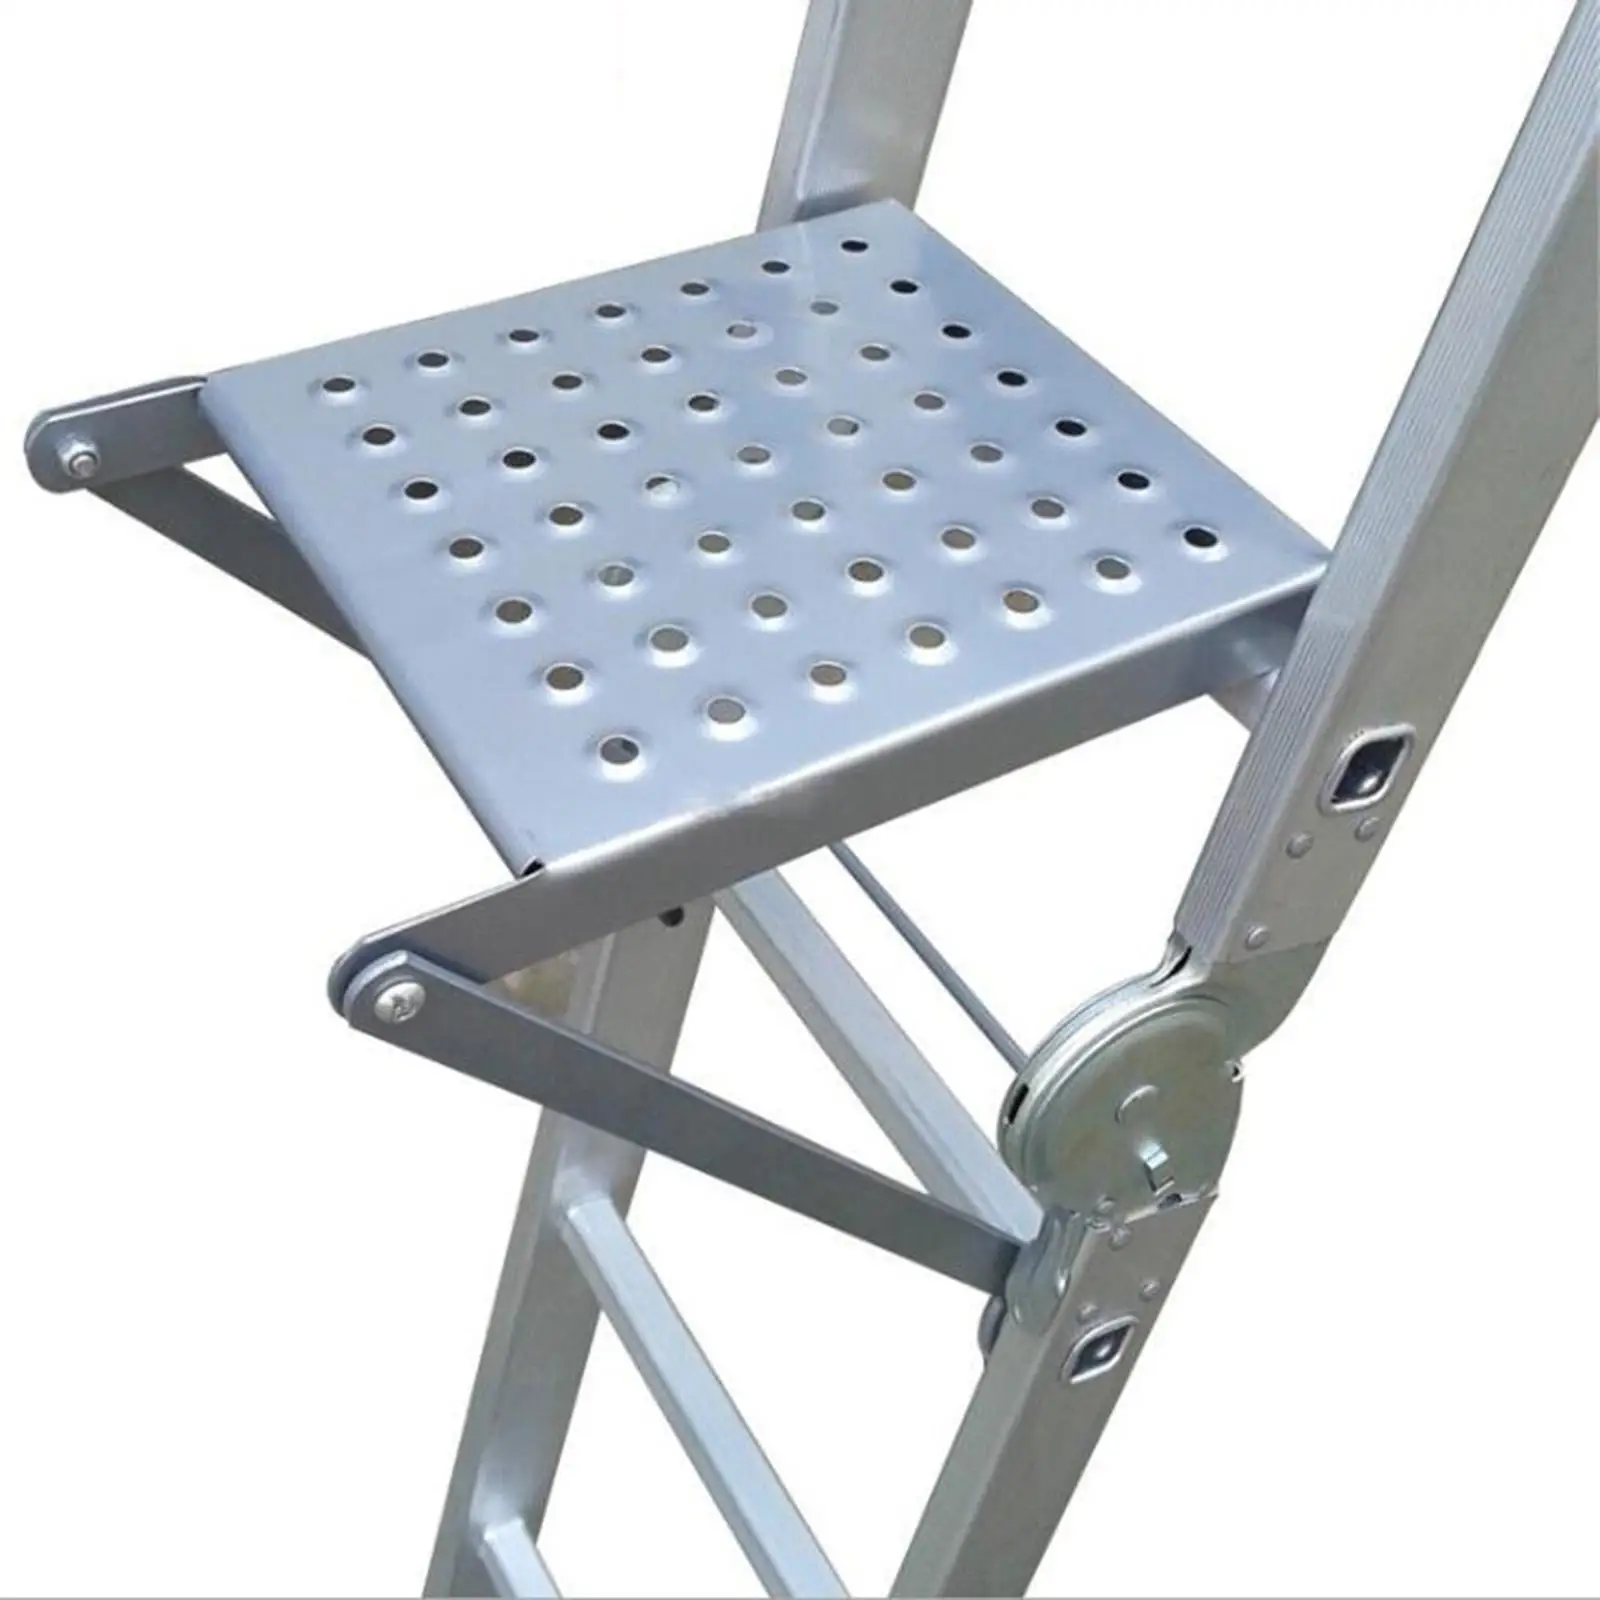 Ladder Work Platform Attachment Work Ladder Tray for Office Indoor Outdoor